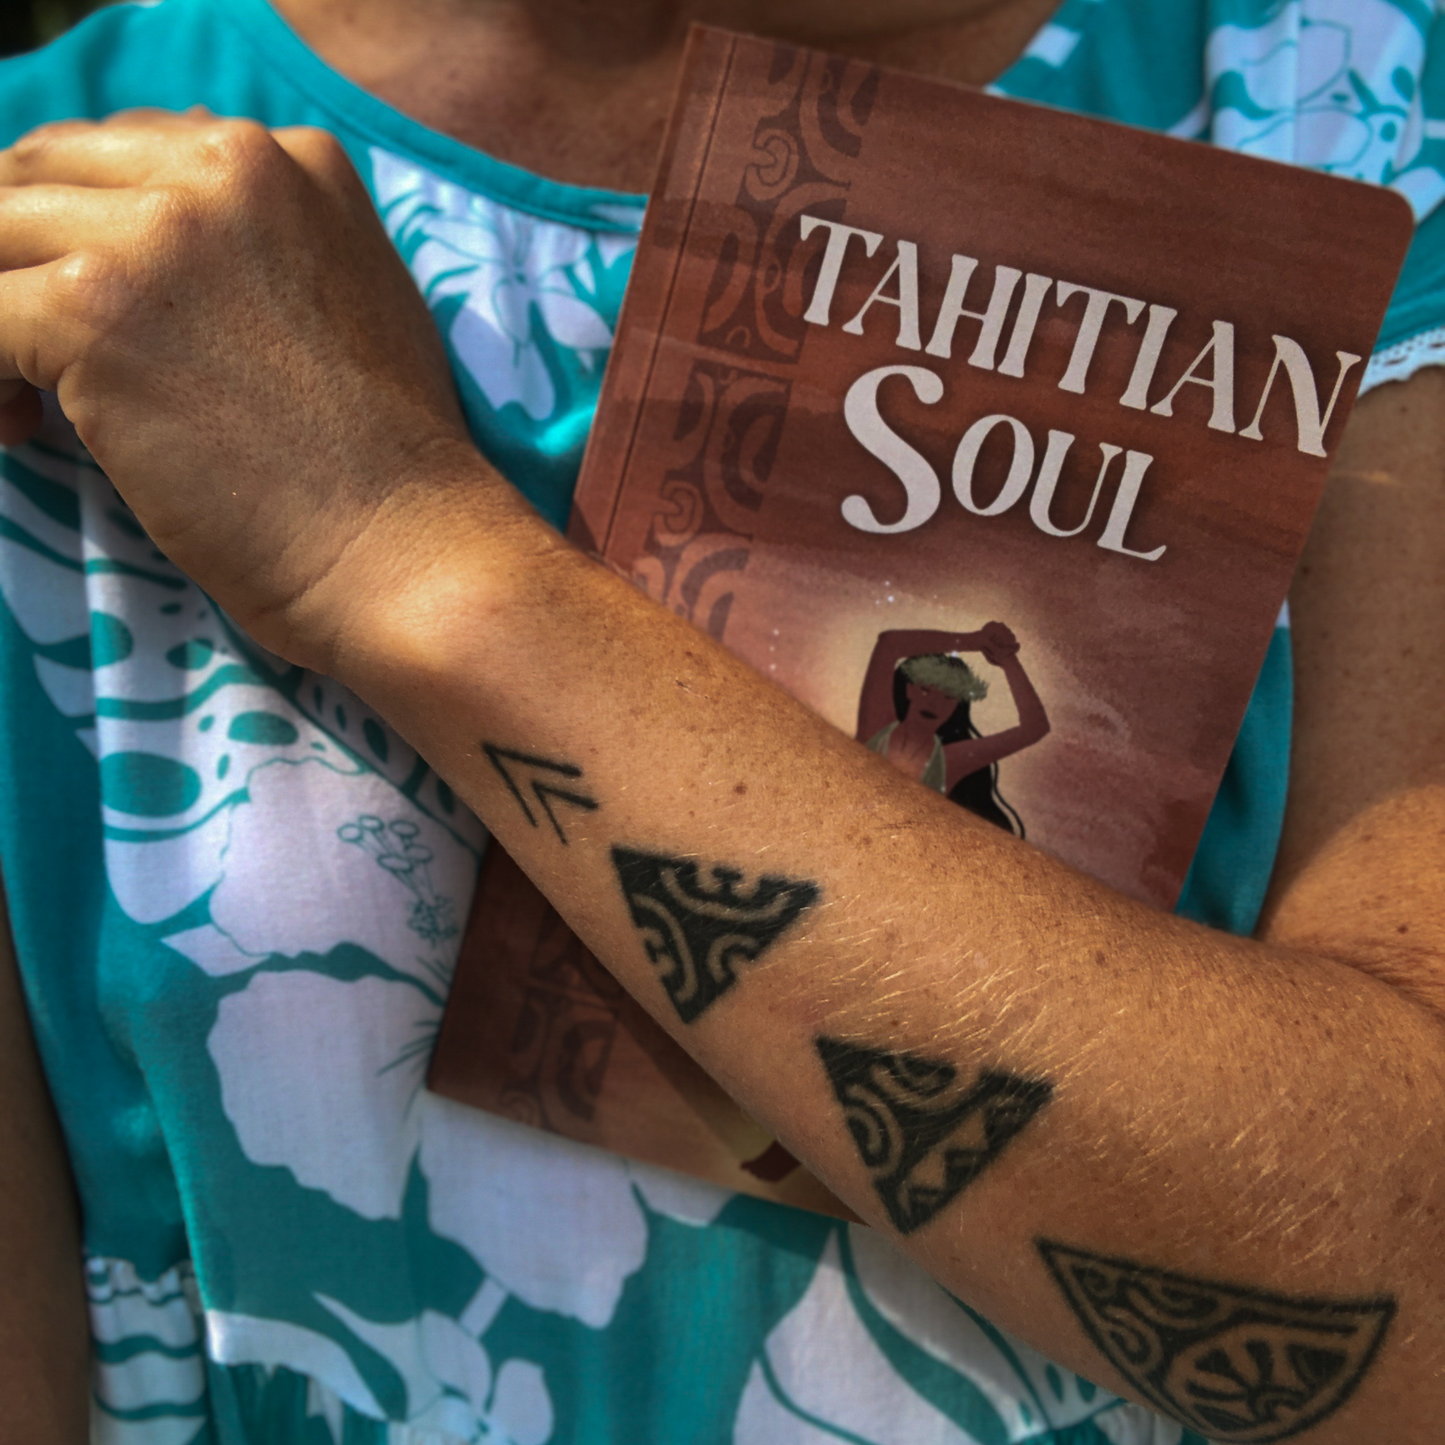 Tahitian Soul